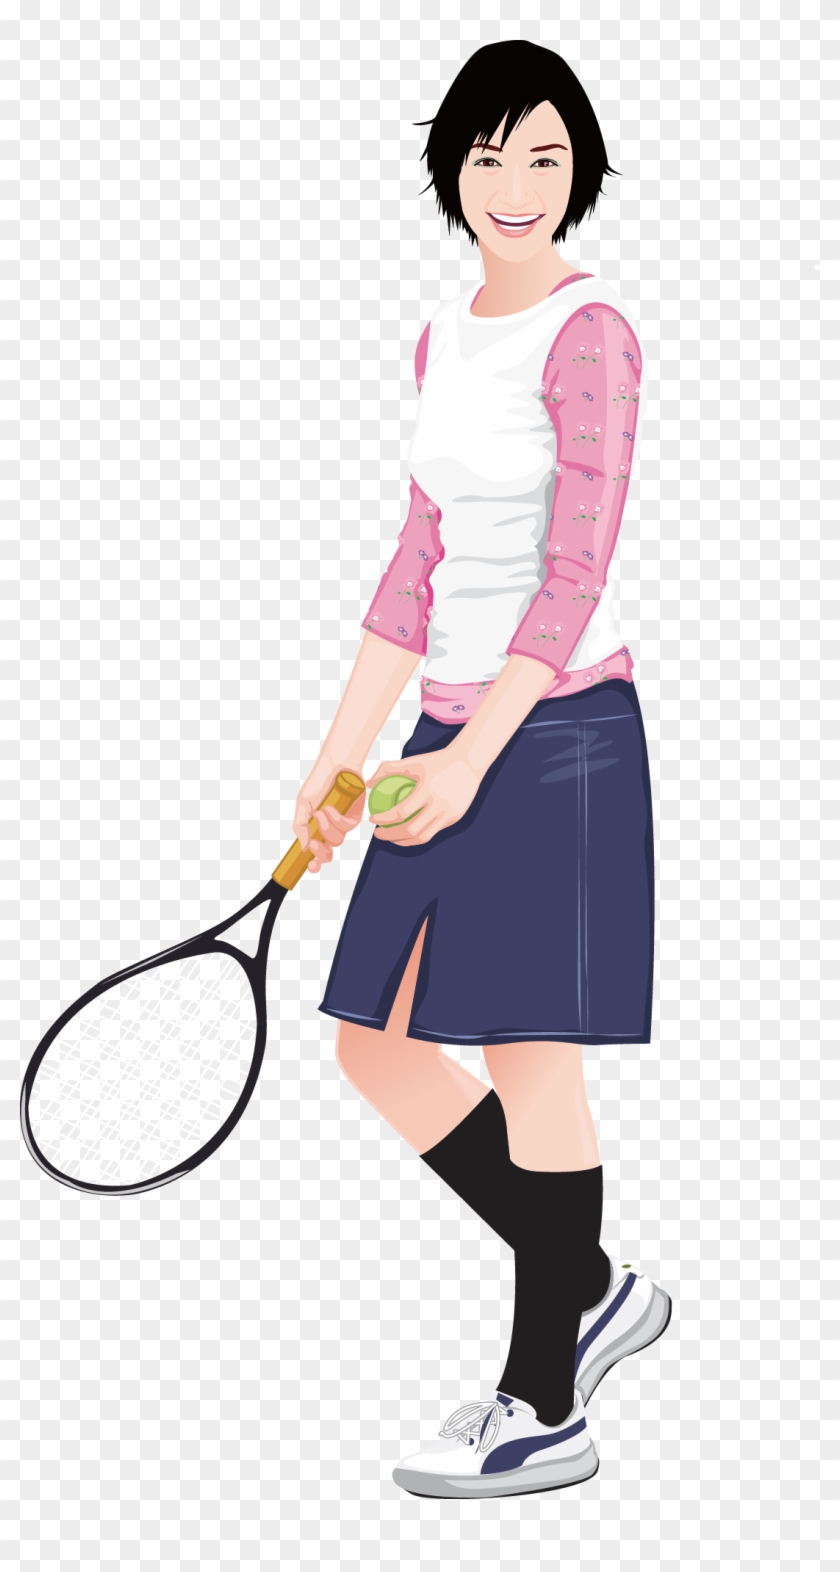 Tennis Girl Euclidean Vector Clip Art - Tennis Girl Euclidean Vector Clip Art #206011